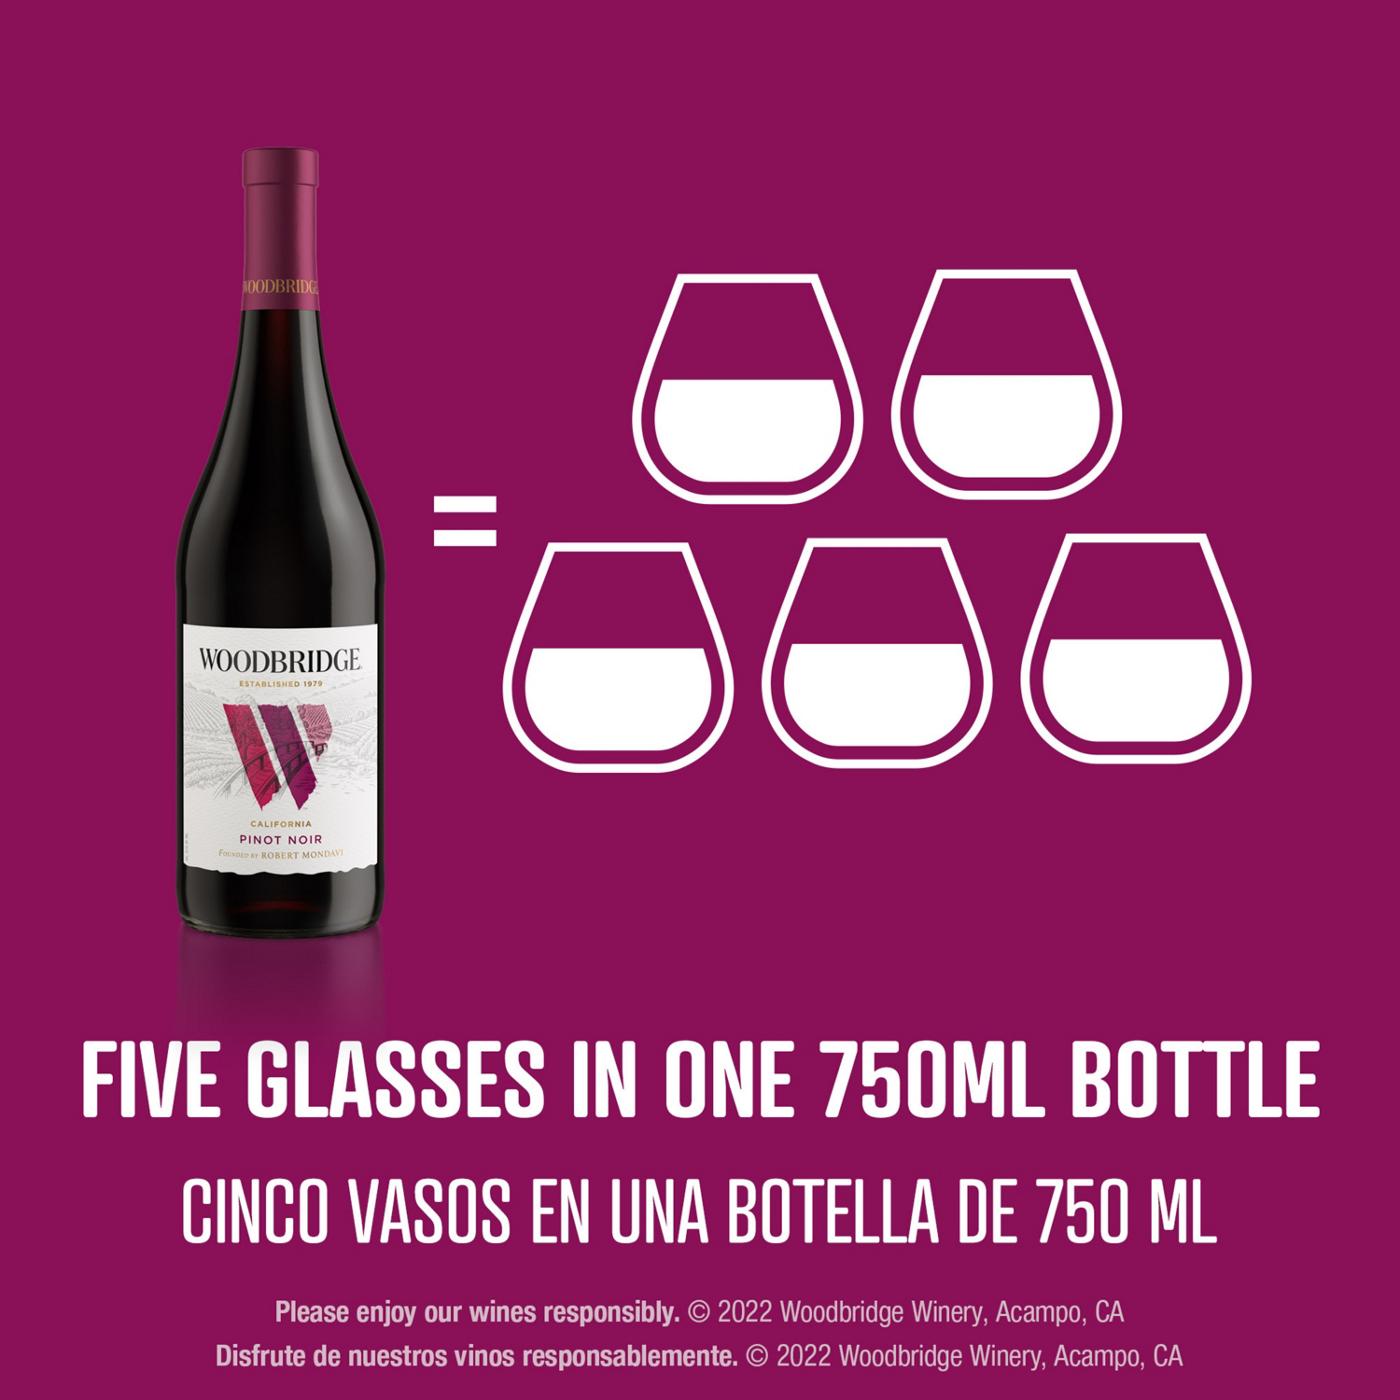 Woodbridge Pinot Noir Red Wine 750 mL Bottle; image 4 of 10